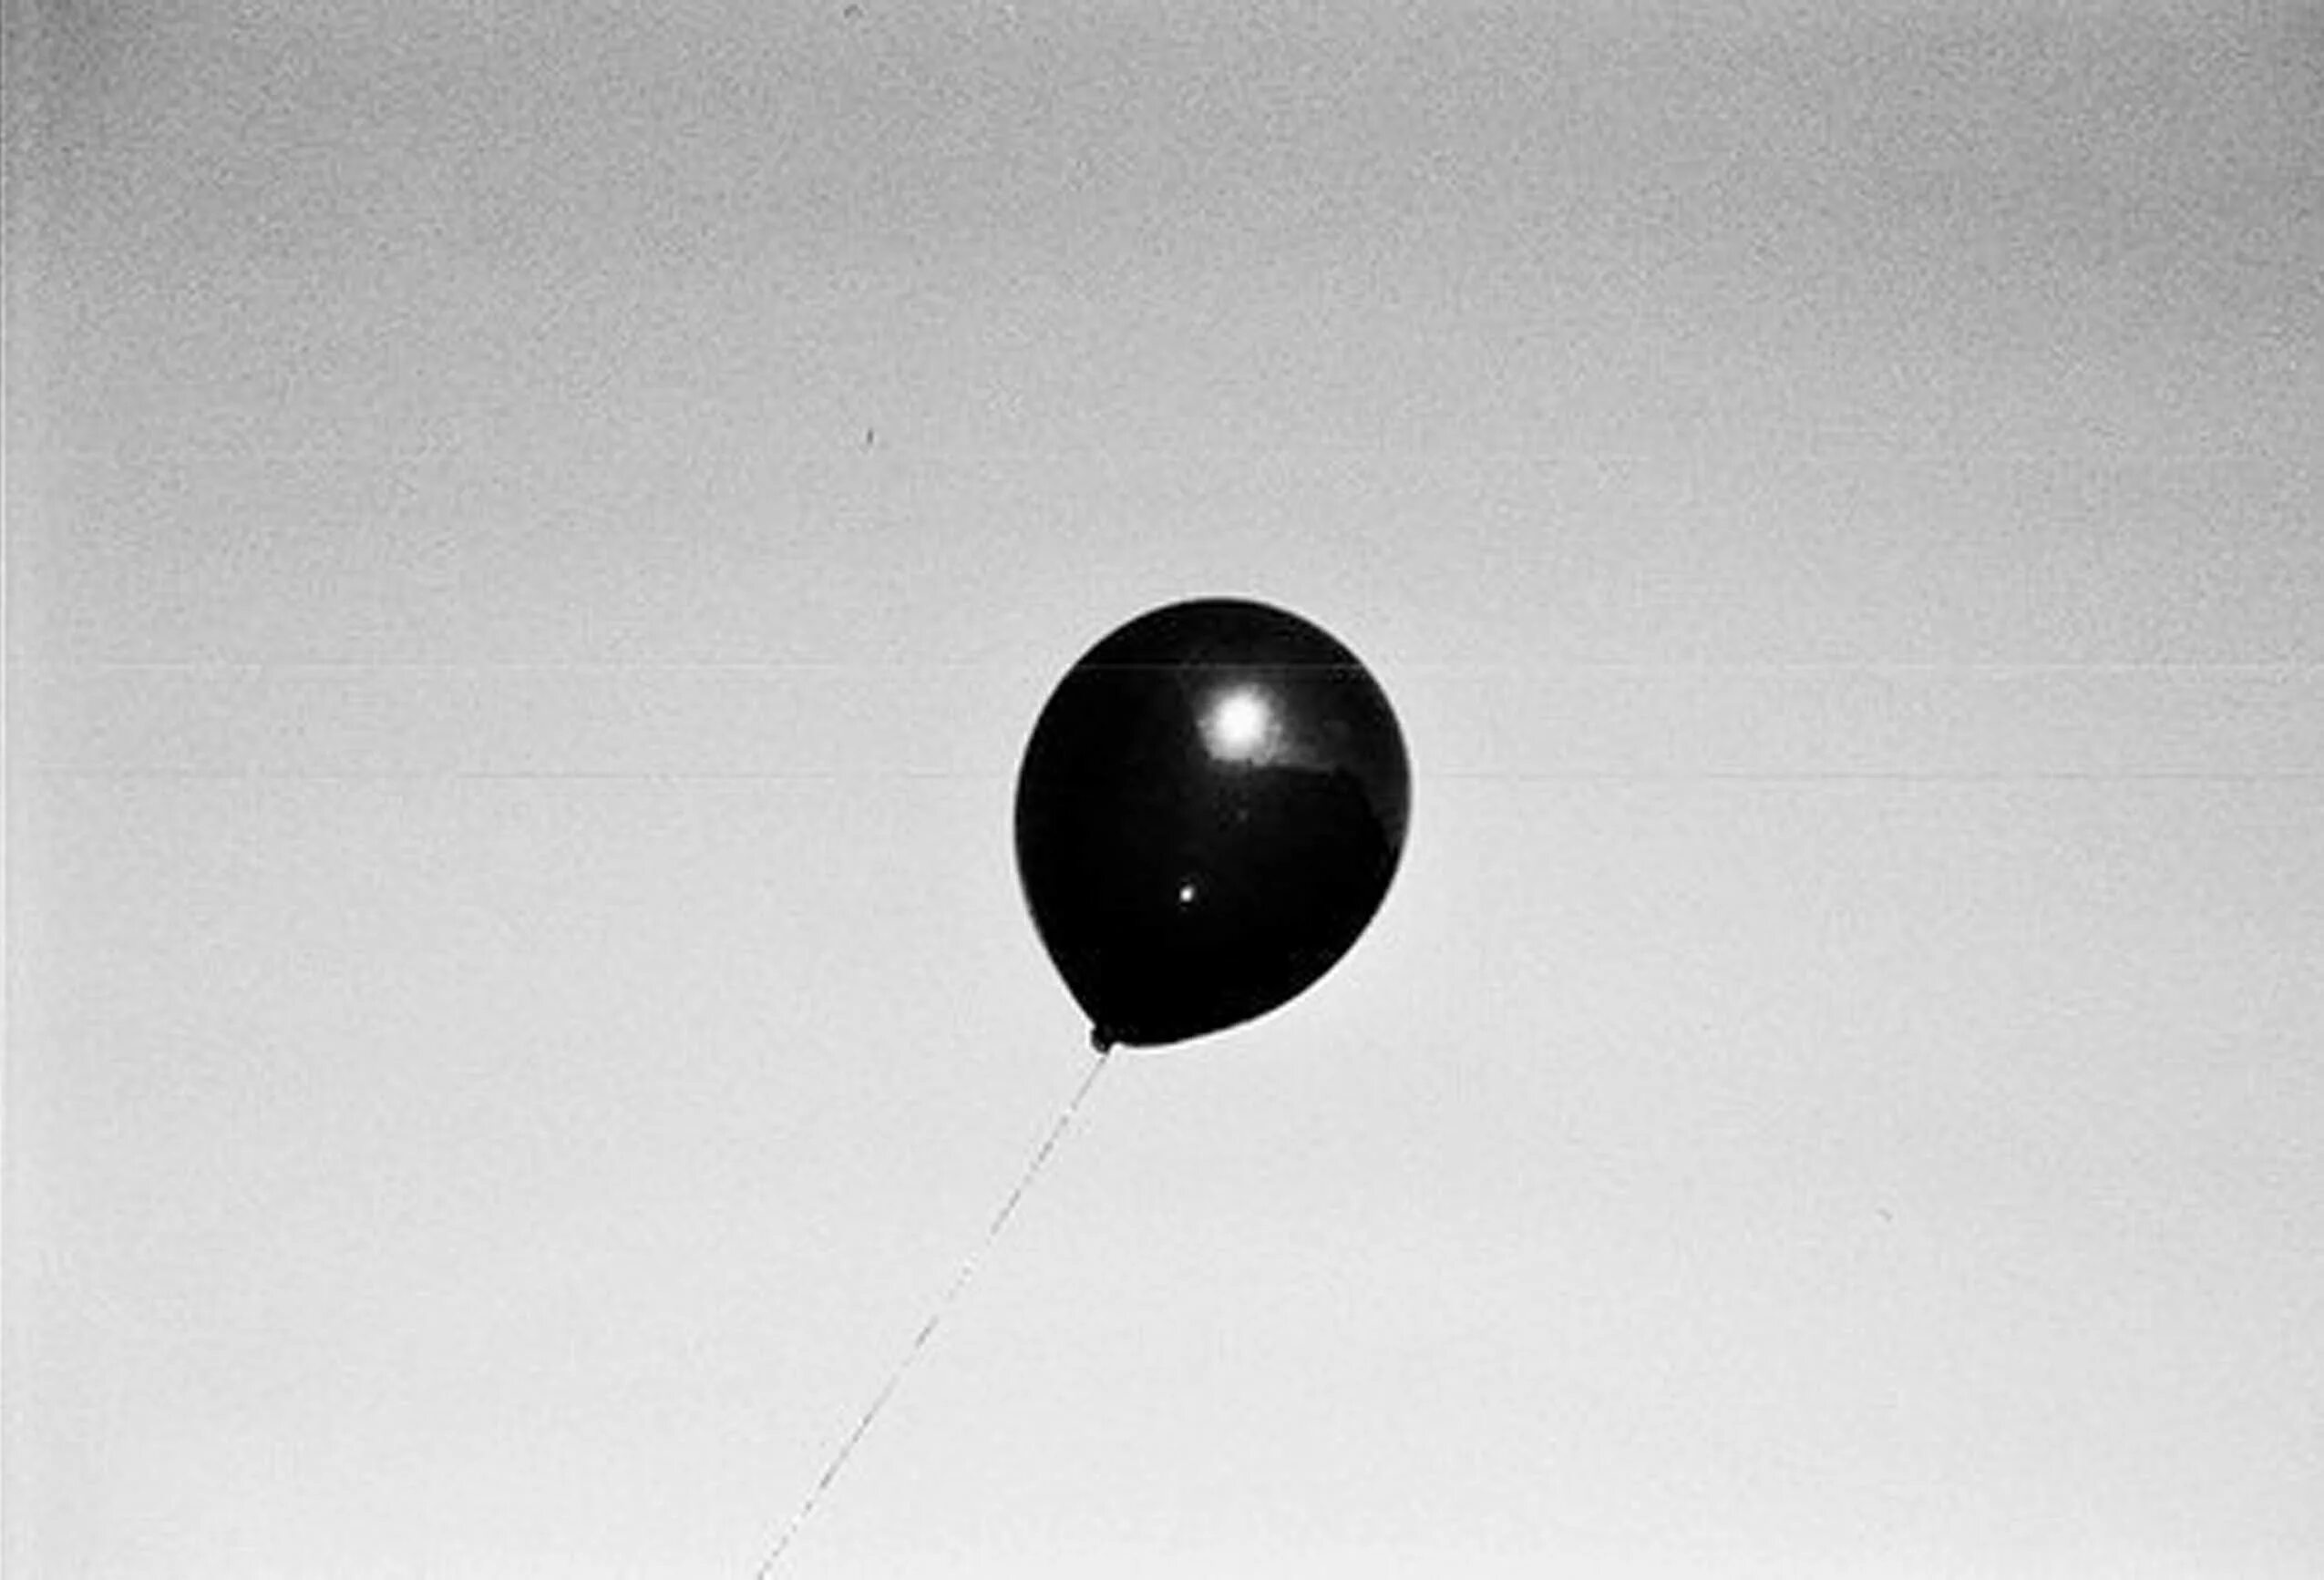 Черный воздушный шарик. “Черный шар” (the Black Balloon), 2008. Черный воздушный шар. Черный воздушный шарик в небе. Шарик улетел.